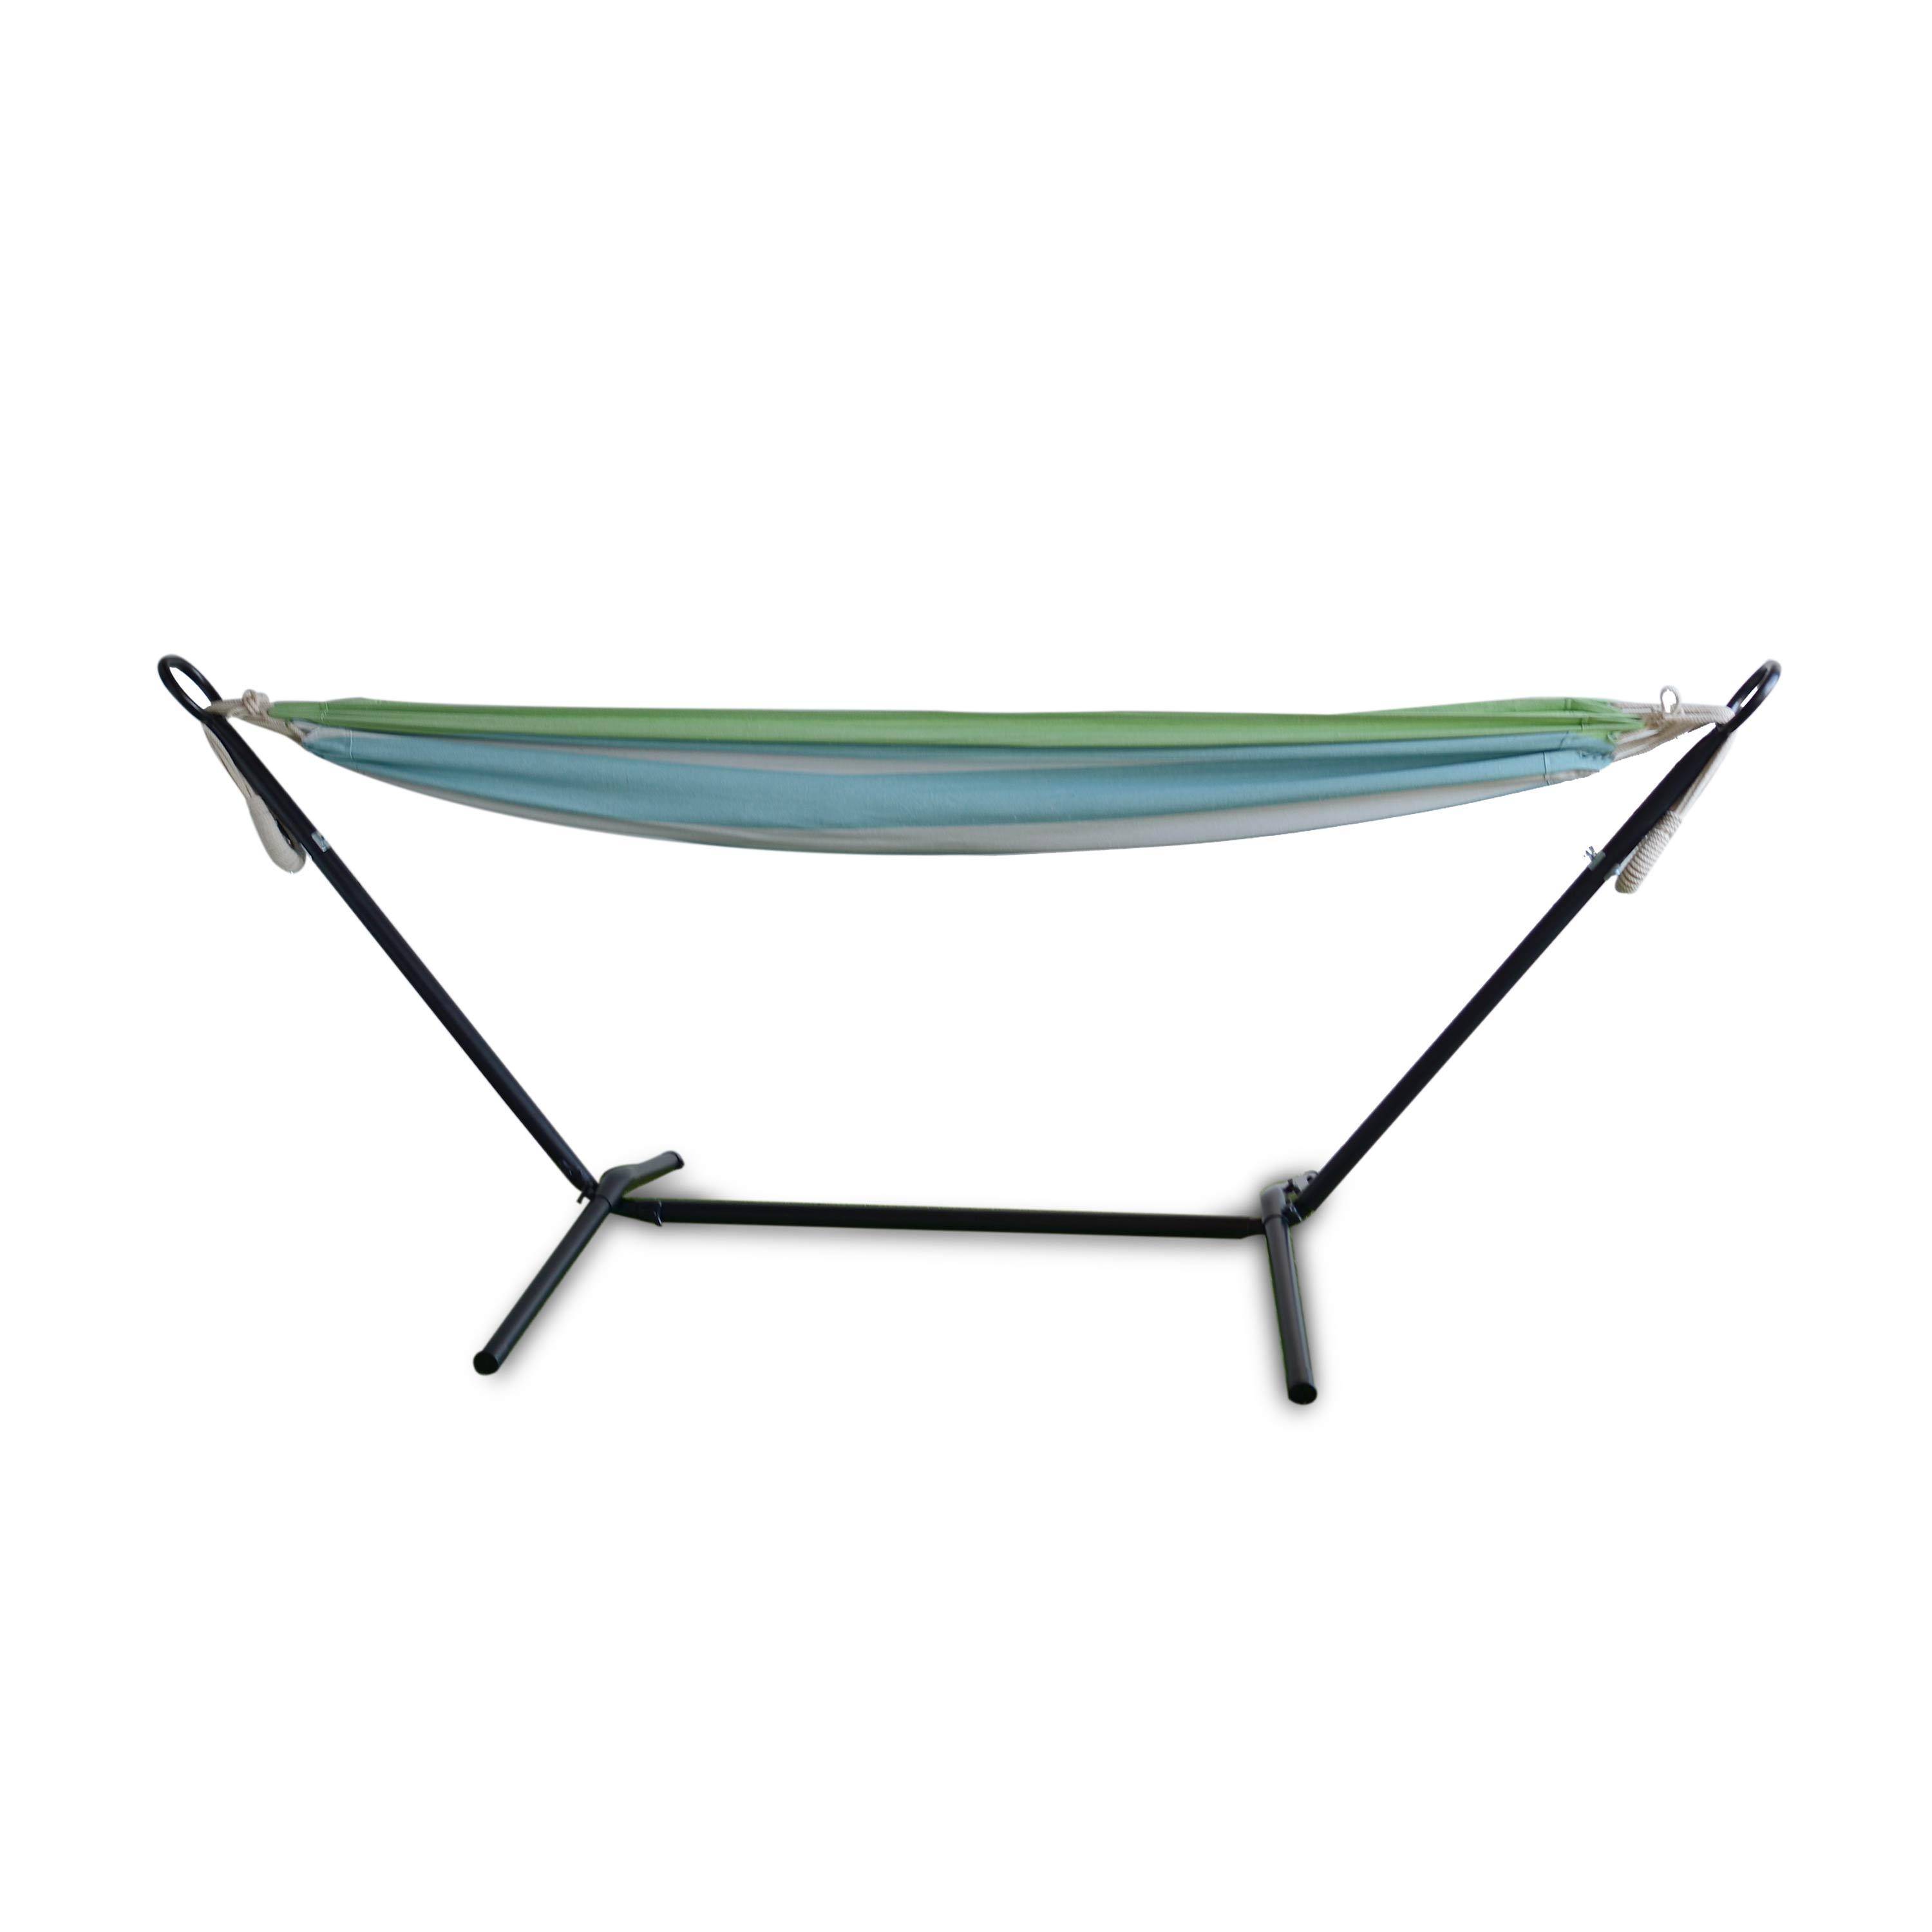 Hangmat voor 1 persoon, 110x220cm, met touwen en karabijnhaken, met standaard, groen en blauw gestreept Photo1